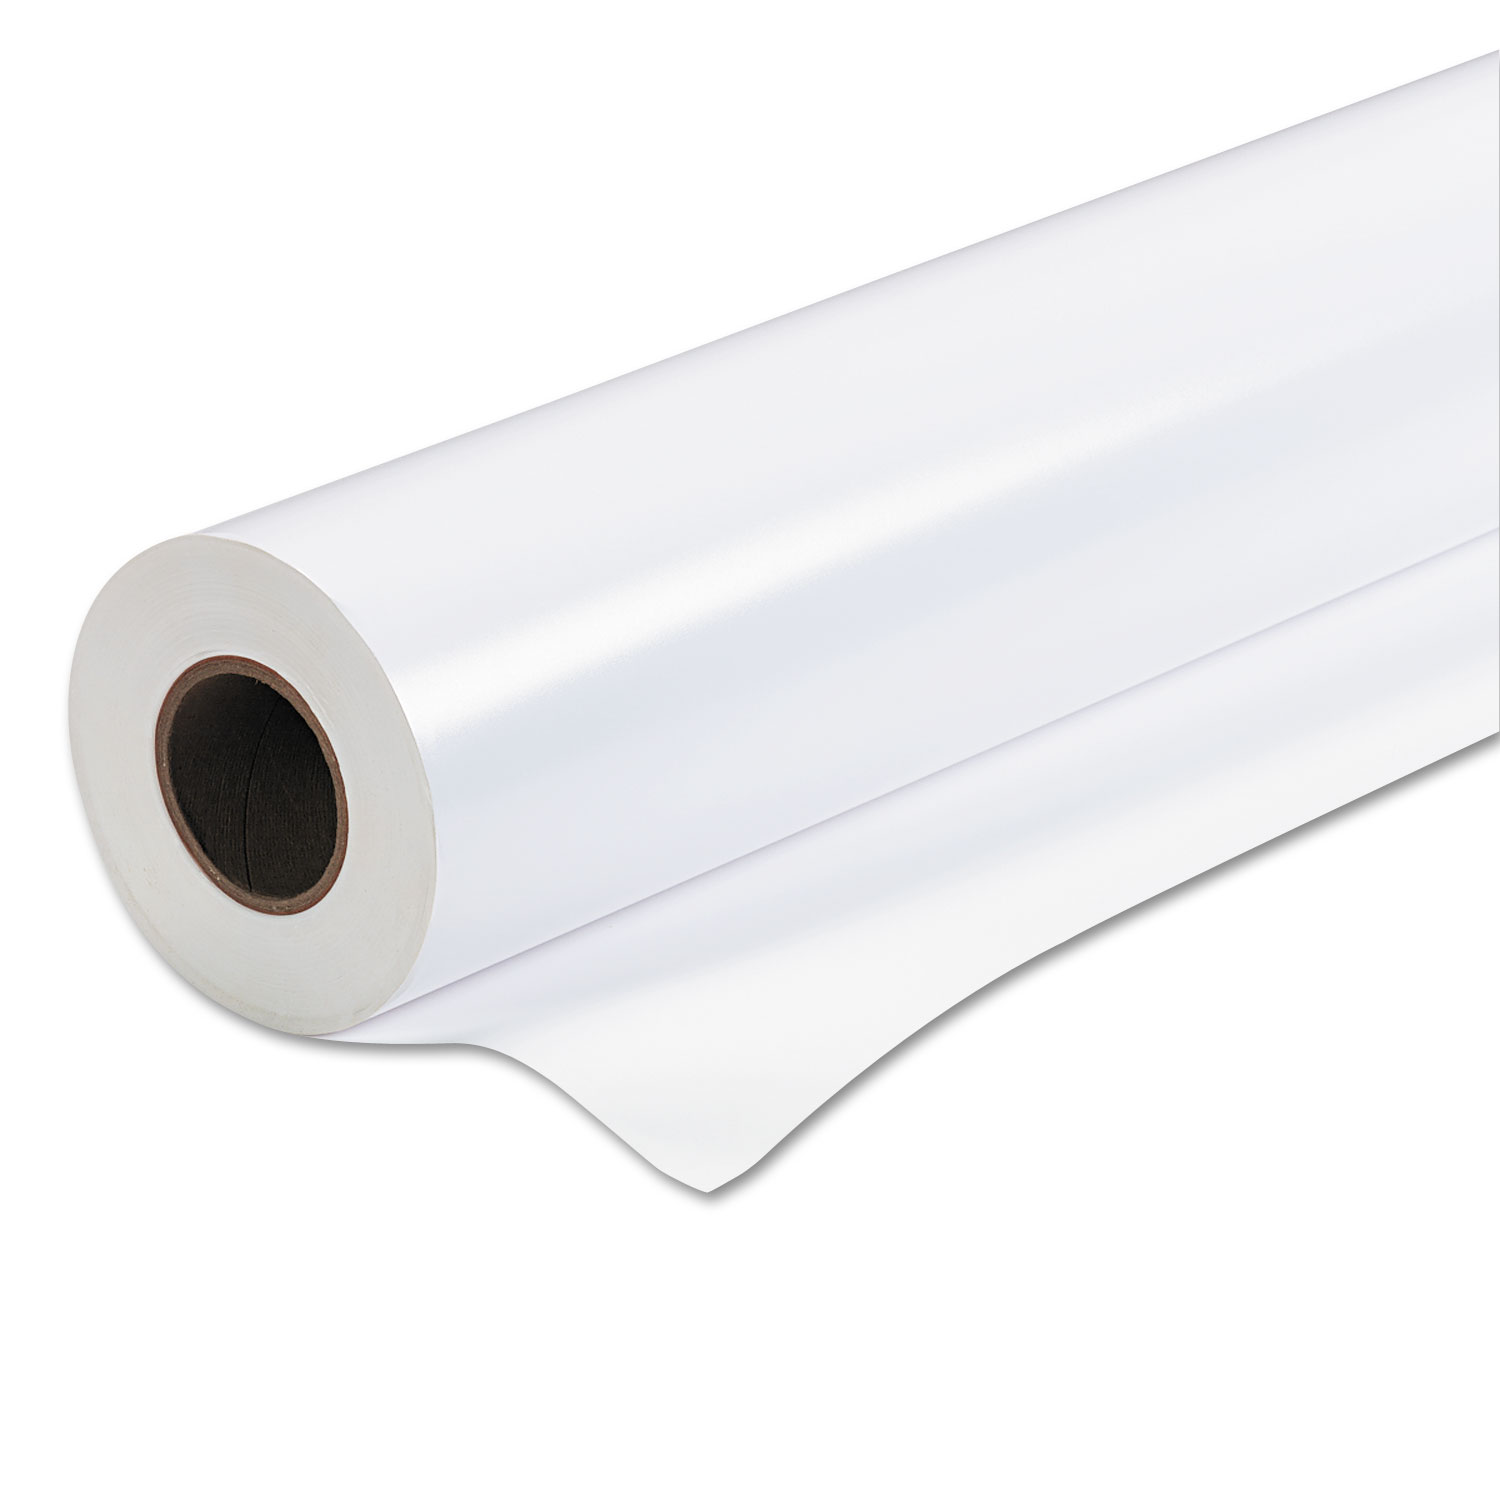 Premium Semi-Gloss Photo Paper, 170 g, 44 x 100 ft, White